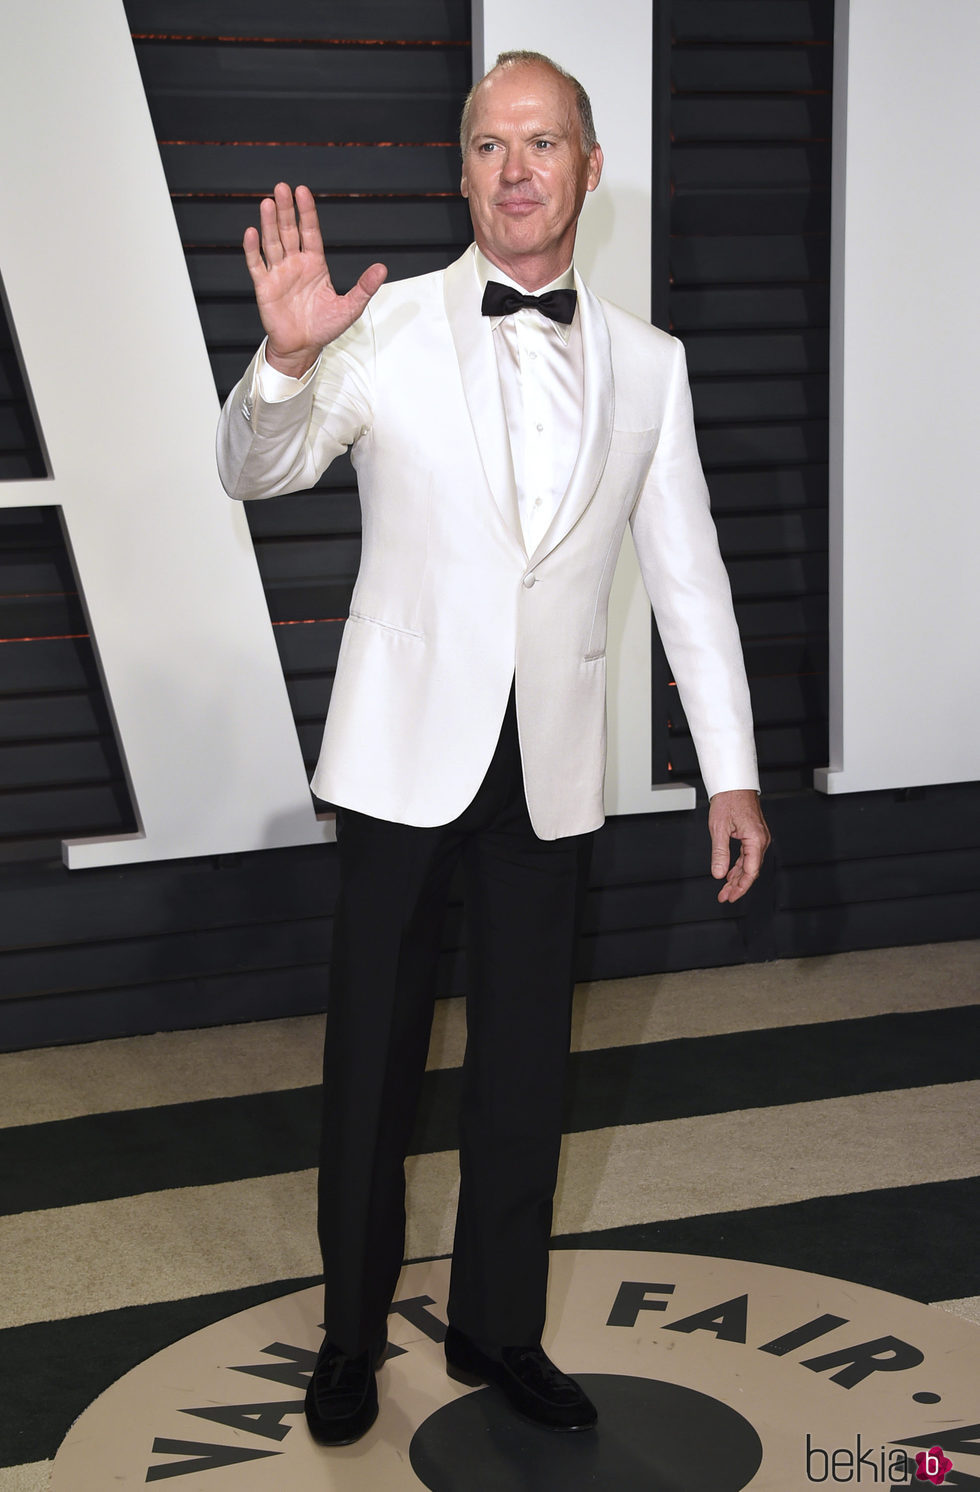 Michael Keaton en la fiesta de Vanity Fair de los Premios Oscar 2017